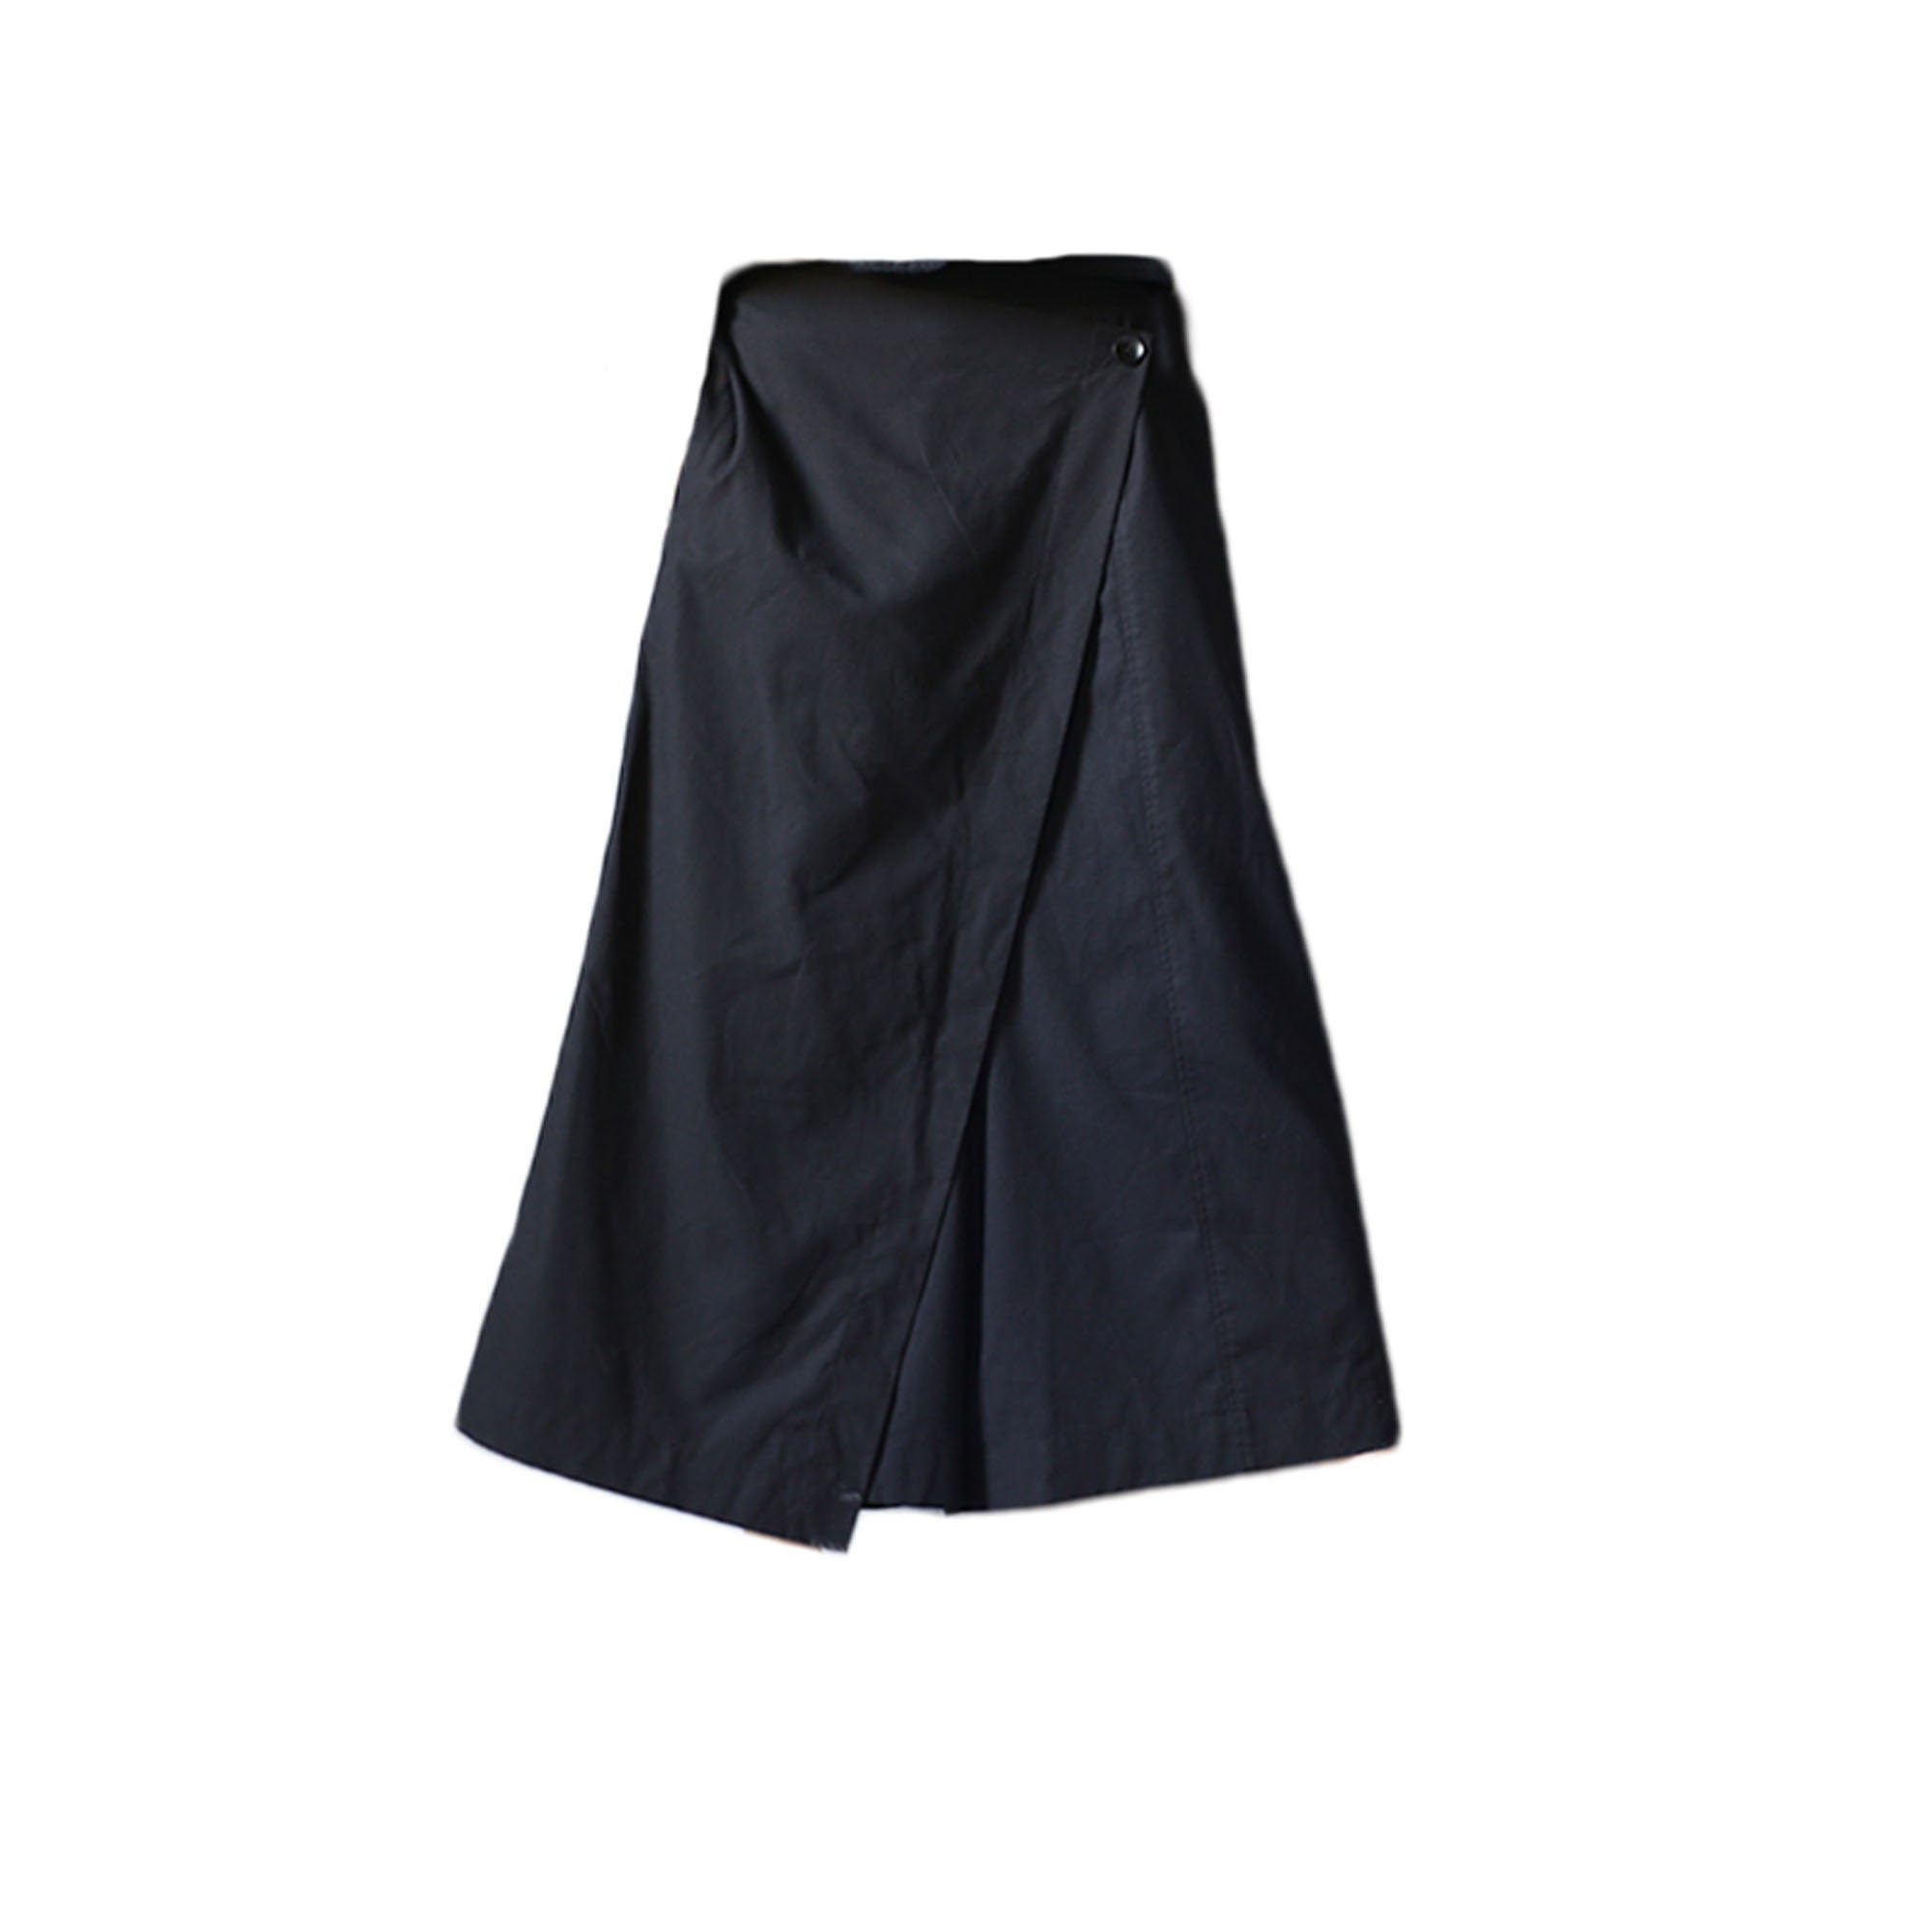 Cotton Culottes Black Wide Leg Pants Adjustable Waist Low - Etsy